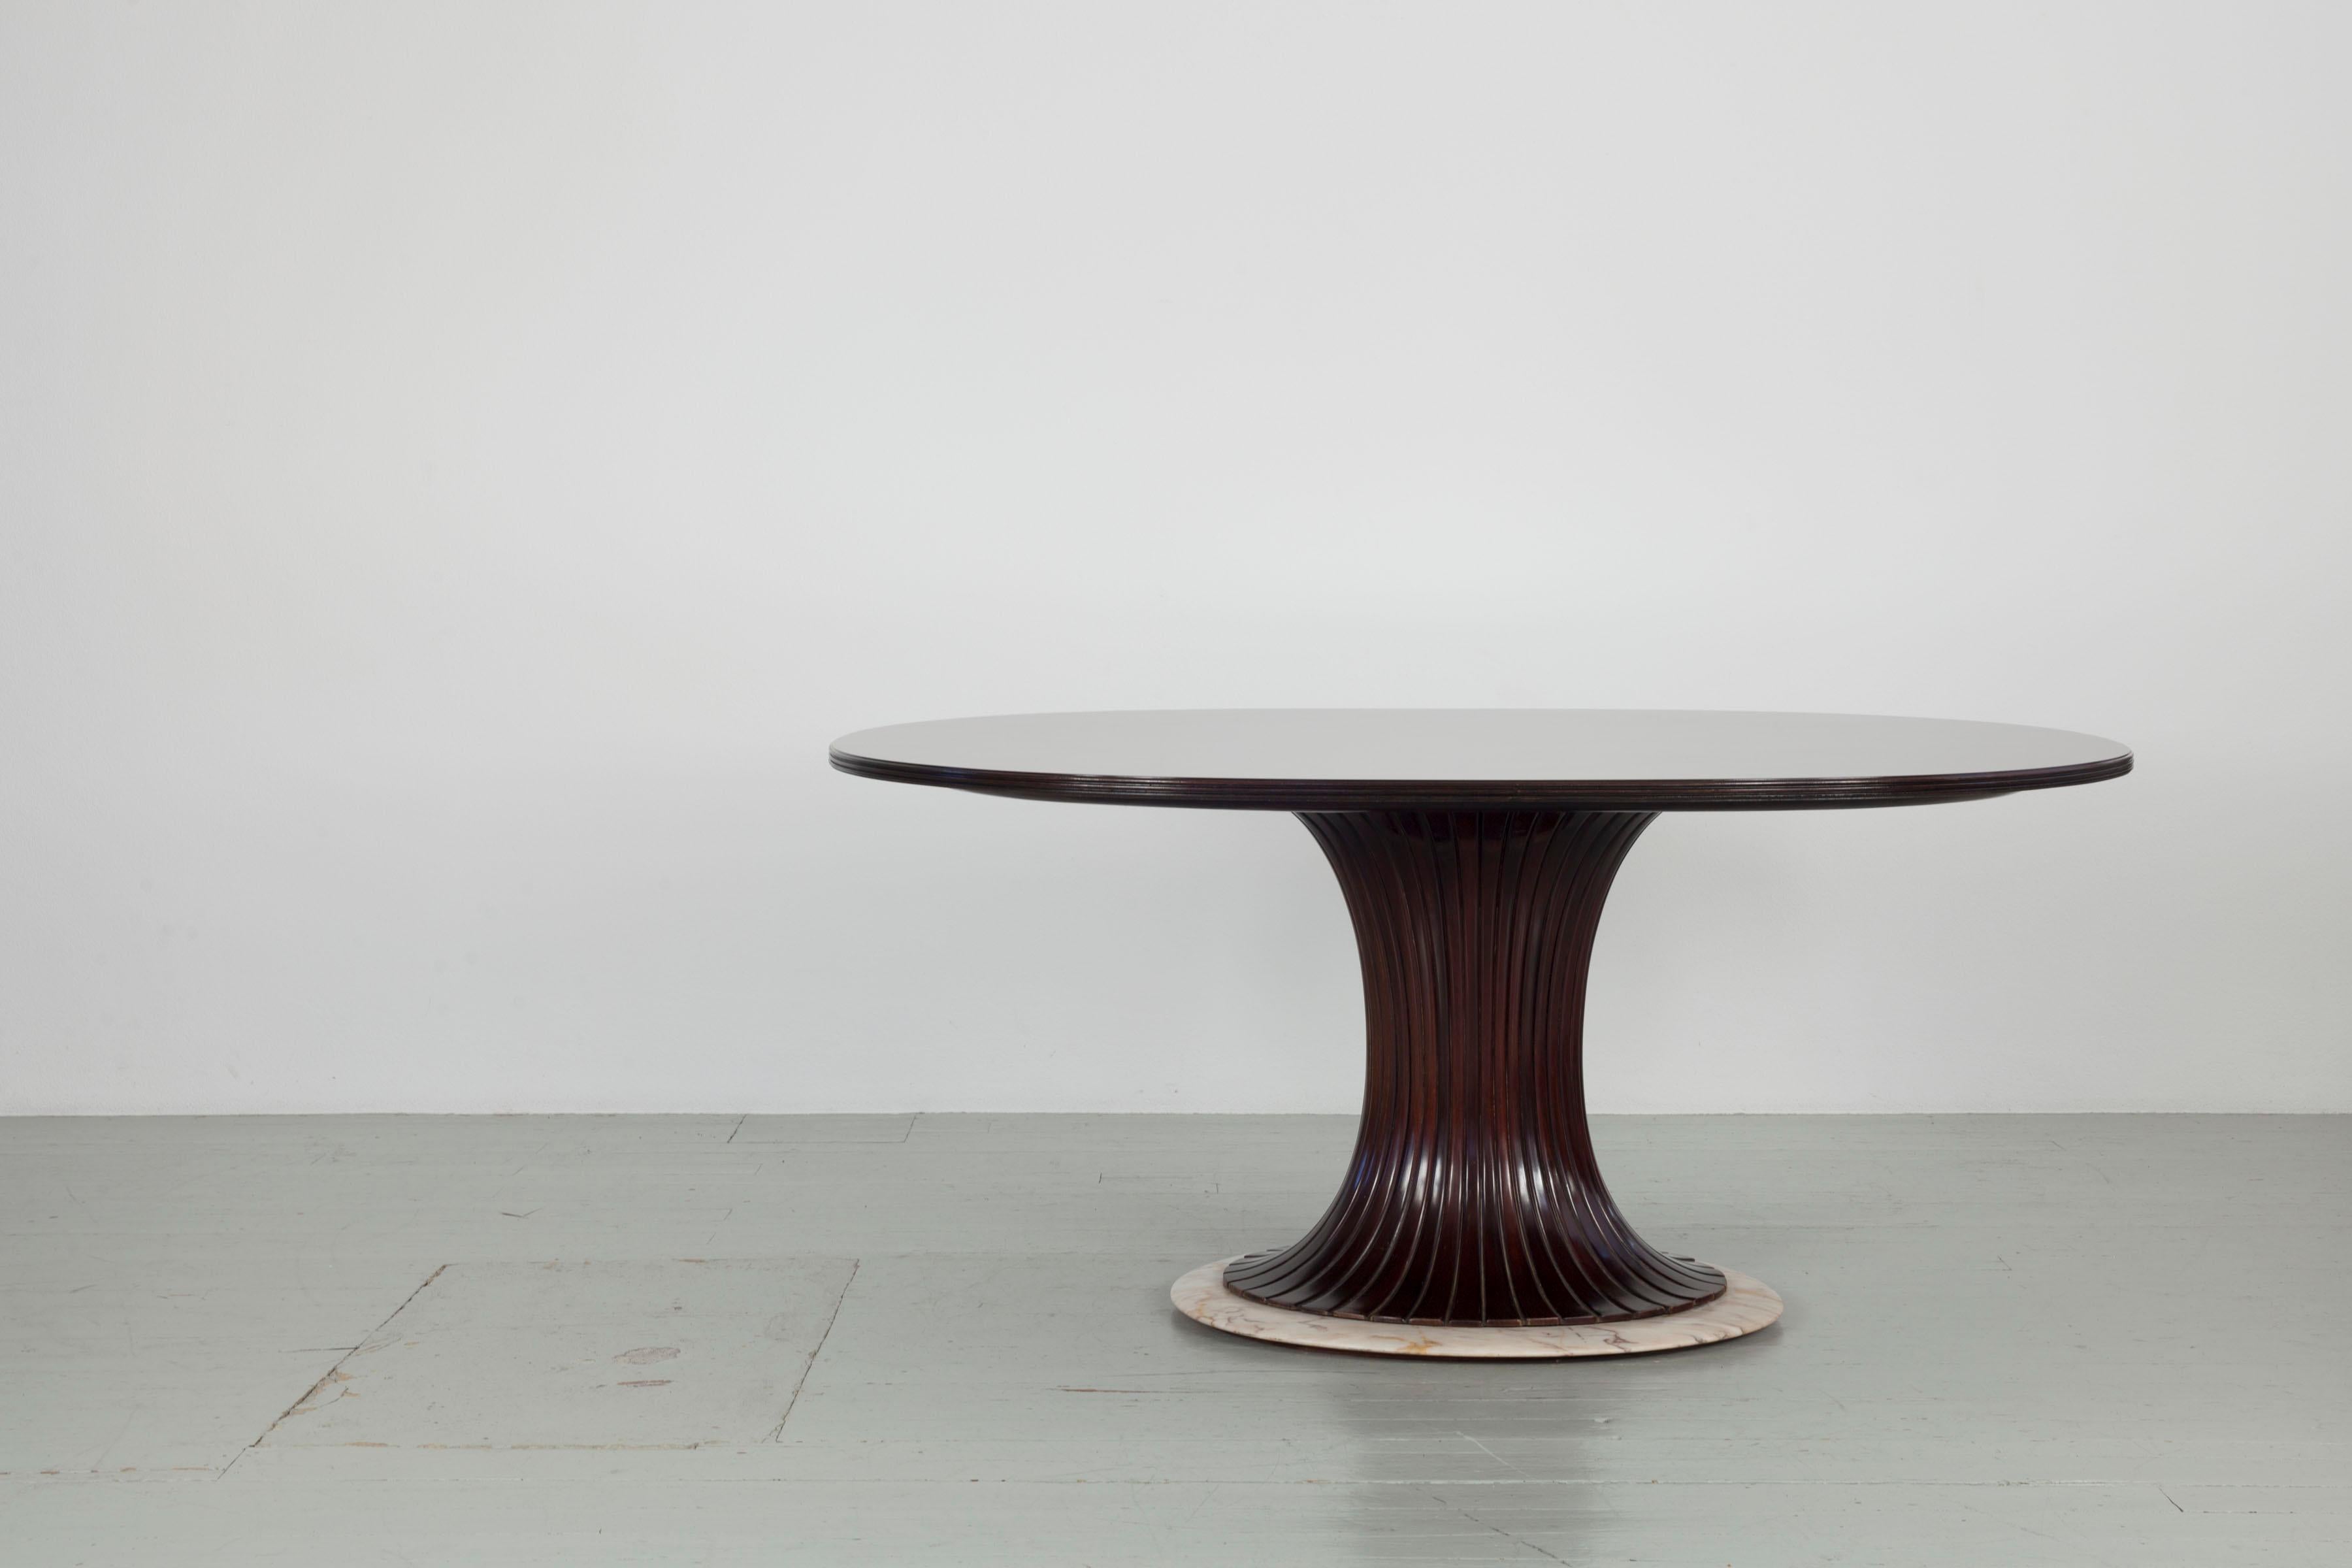 Dieser Tisch im Stil von Vittorio Dassi wurde in den 1950er Jahren entworfen. Die ovale Tischplatte aus Palisanderfurnier ruht auf einem sanduhrförmigen Mittelbein aus dunkelbraun gebeiztem Holz. Der gesamte Tisch ist auf einem rosafarbenen